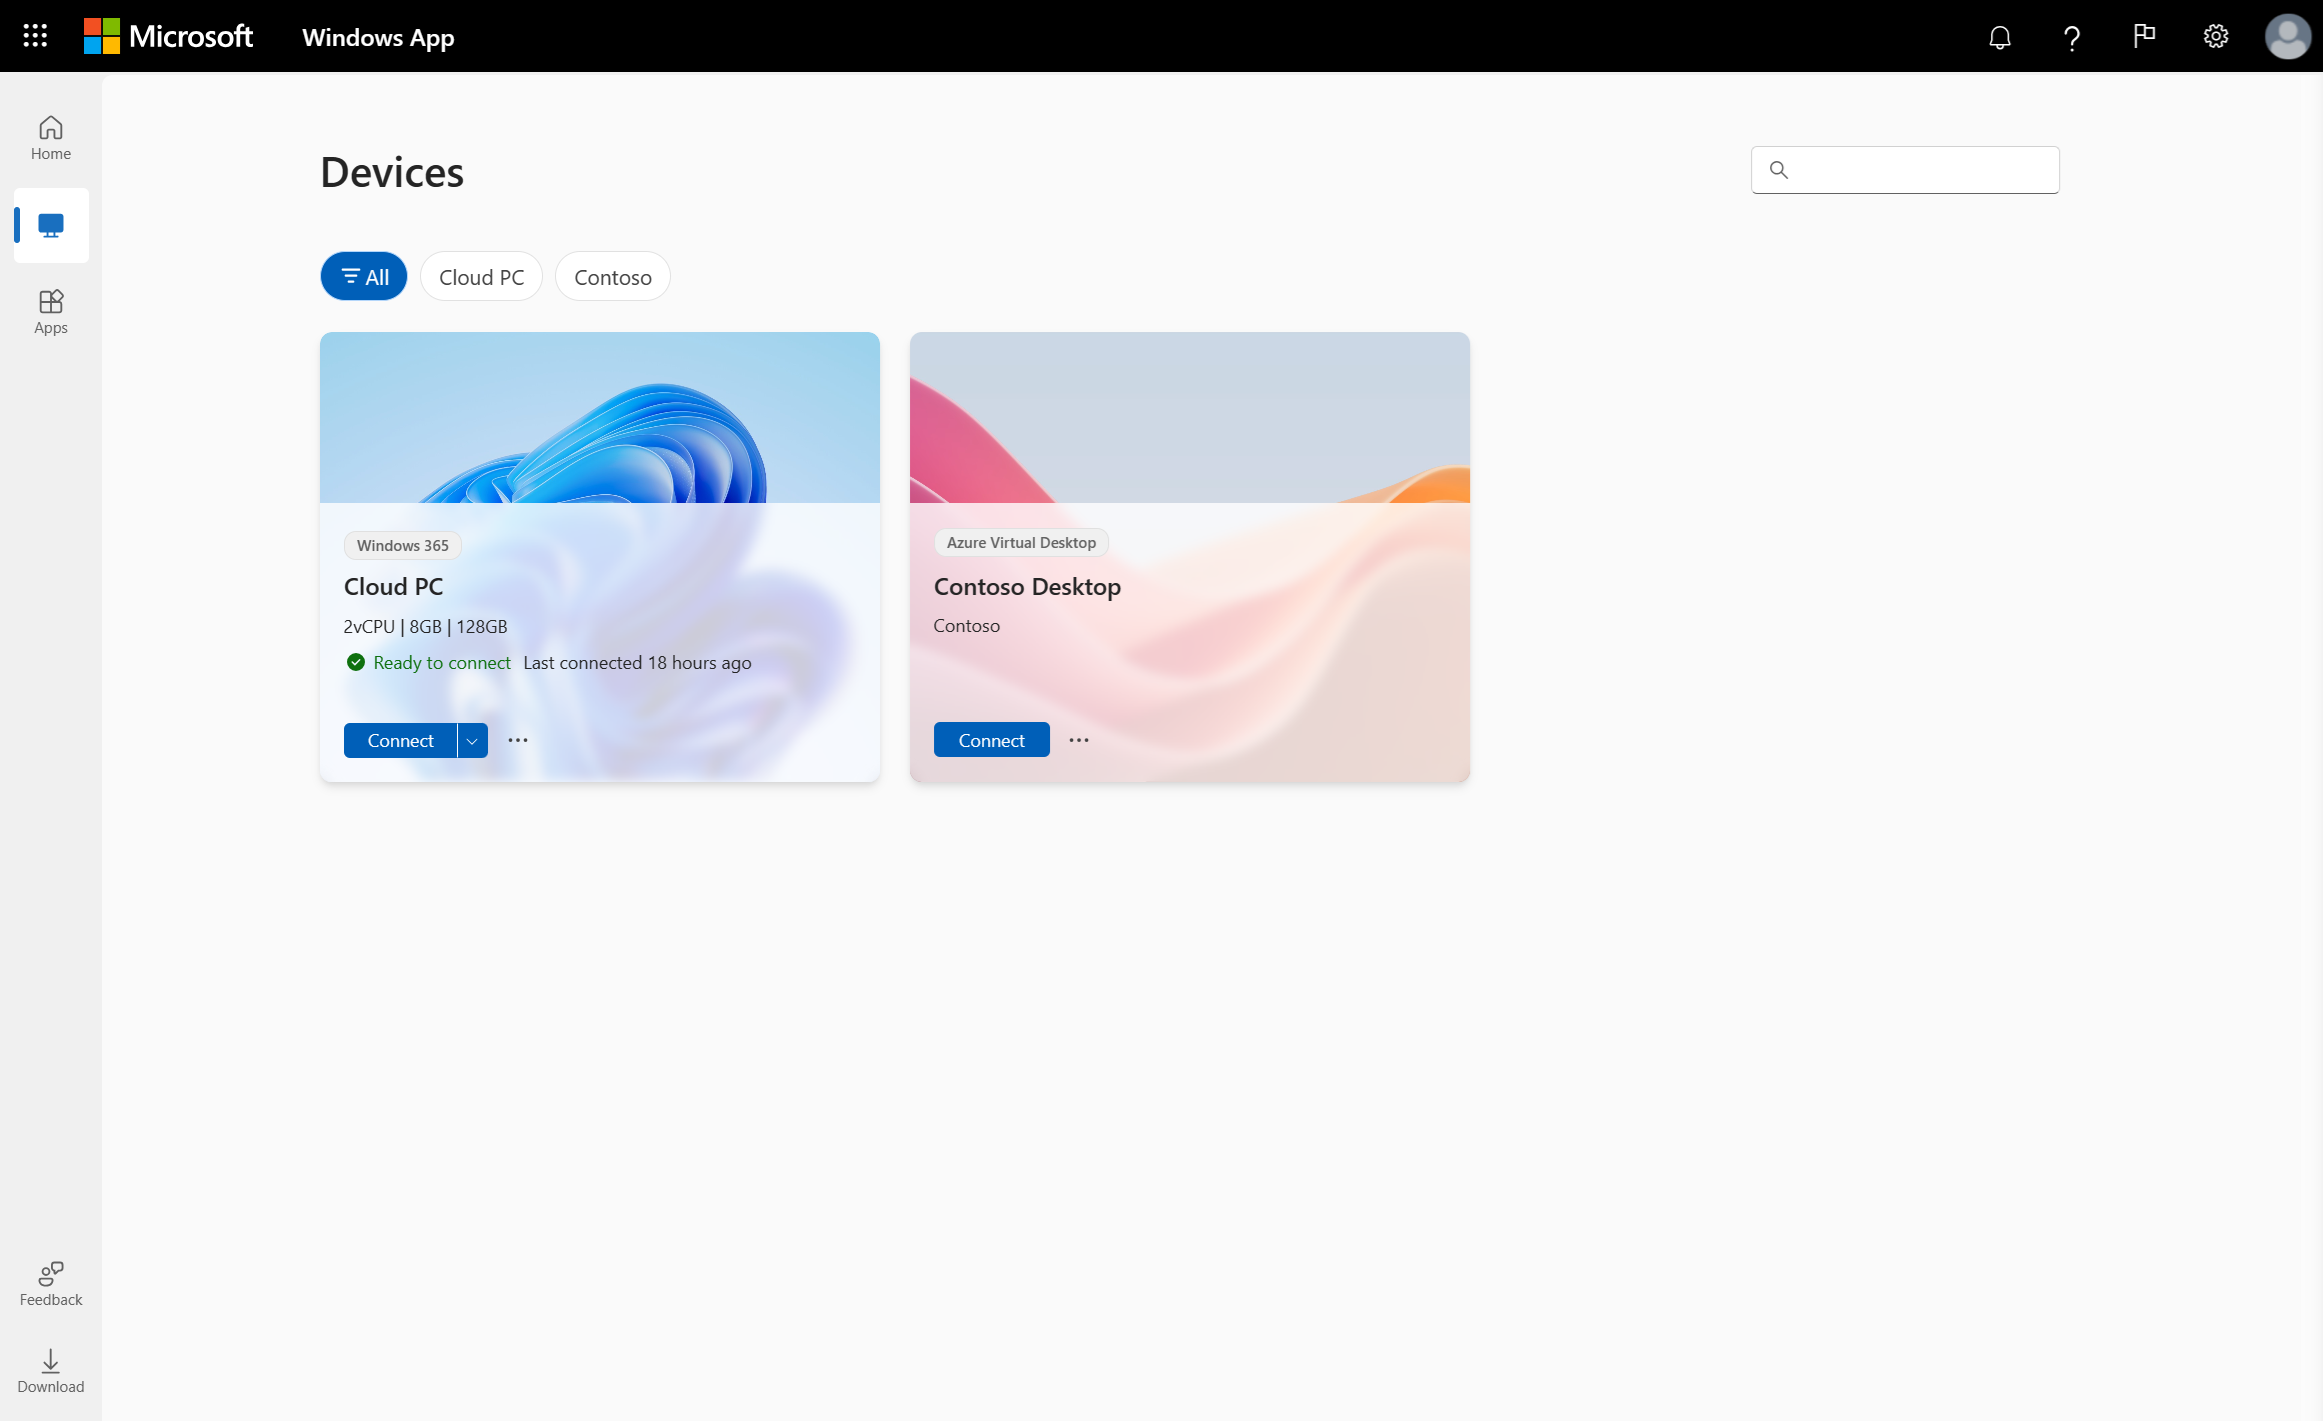 Képernyőkép a Windows App Eszközök lapról egy webböngészőben az Azure Virtual Desktop használatával.